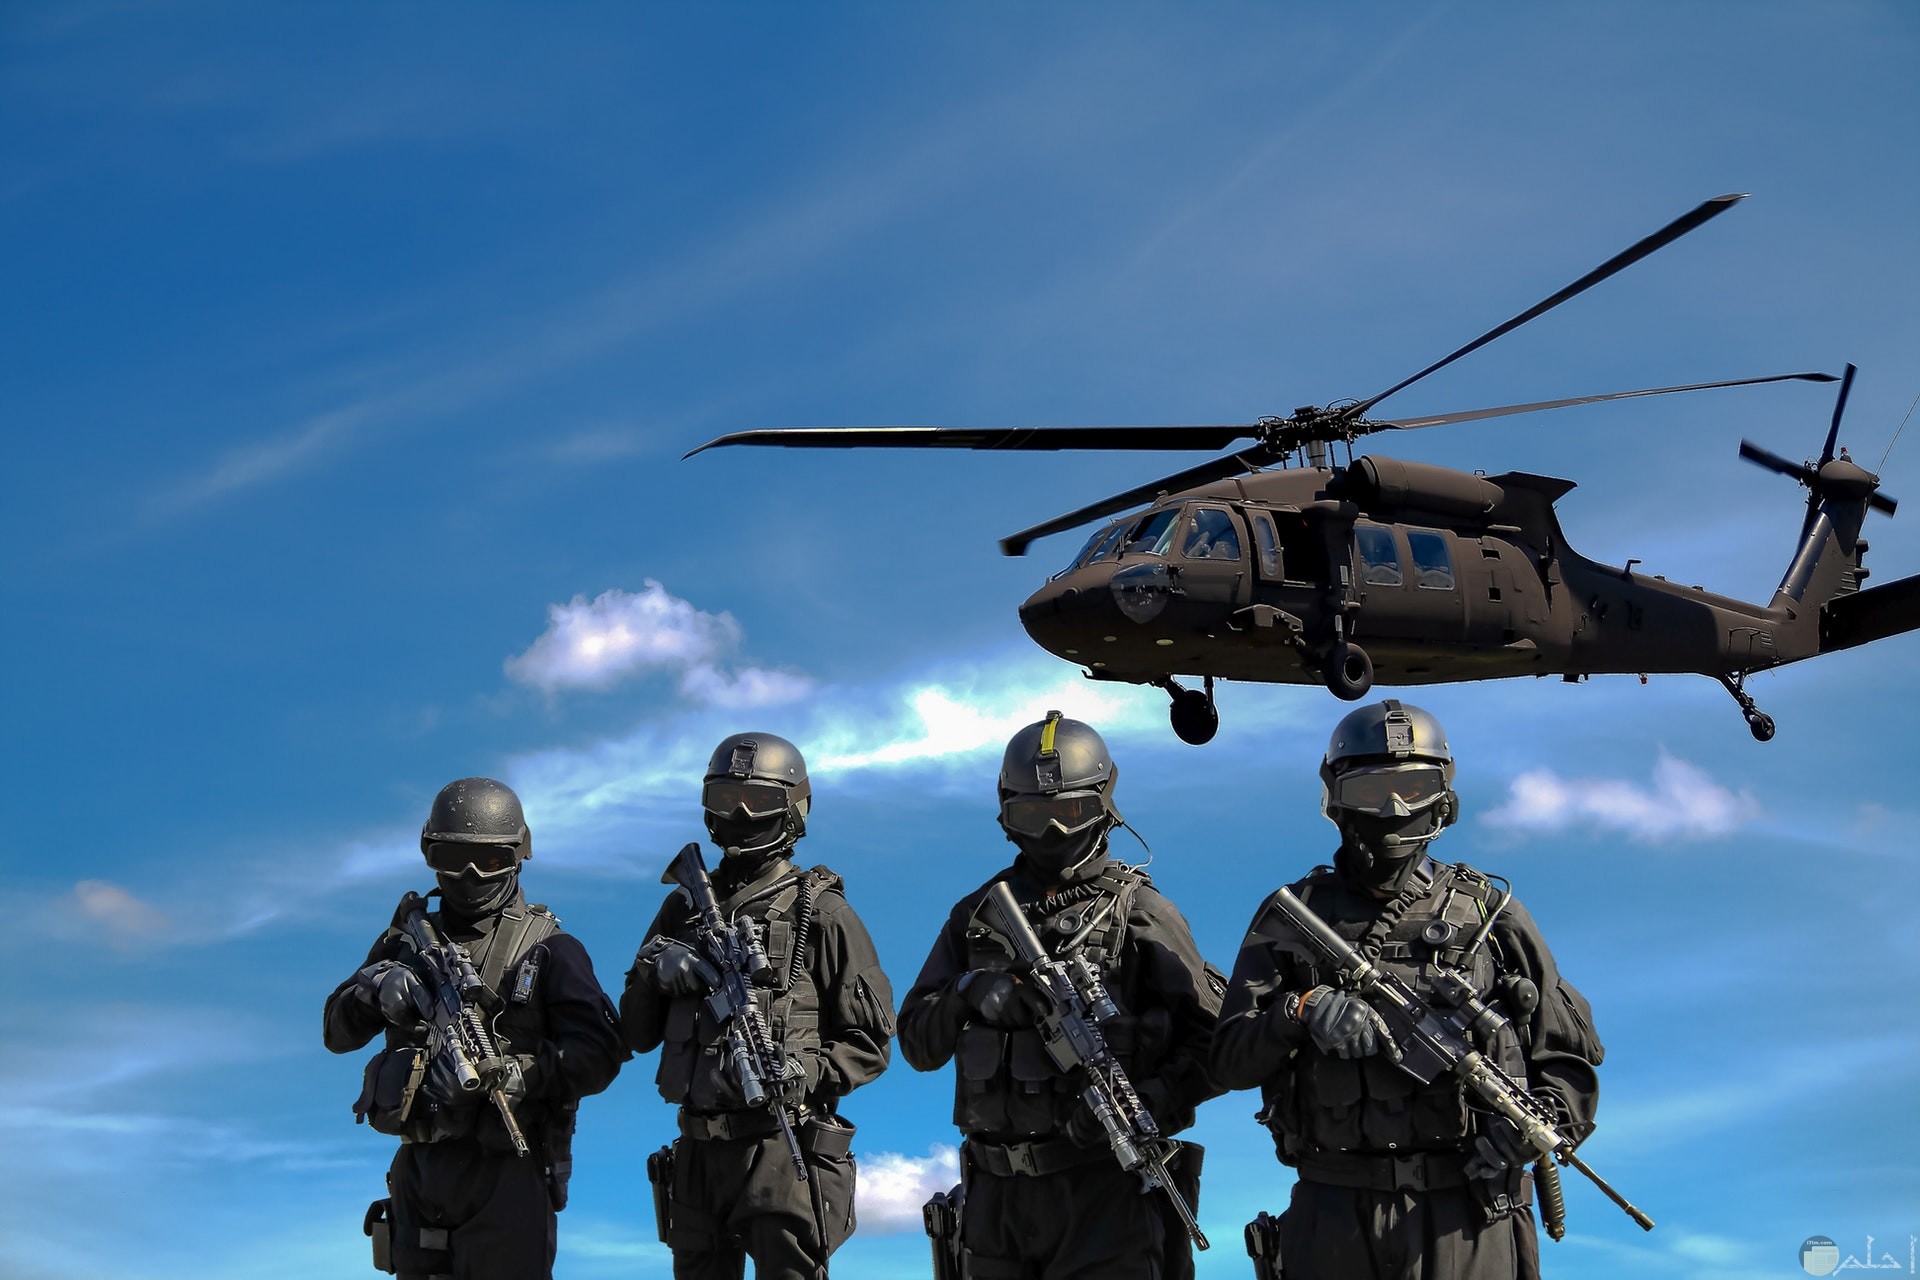 صورة أكشن مميزة لأربع جنود يحملون أسلحة وفوقهم طيارة حربية